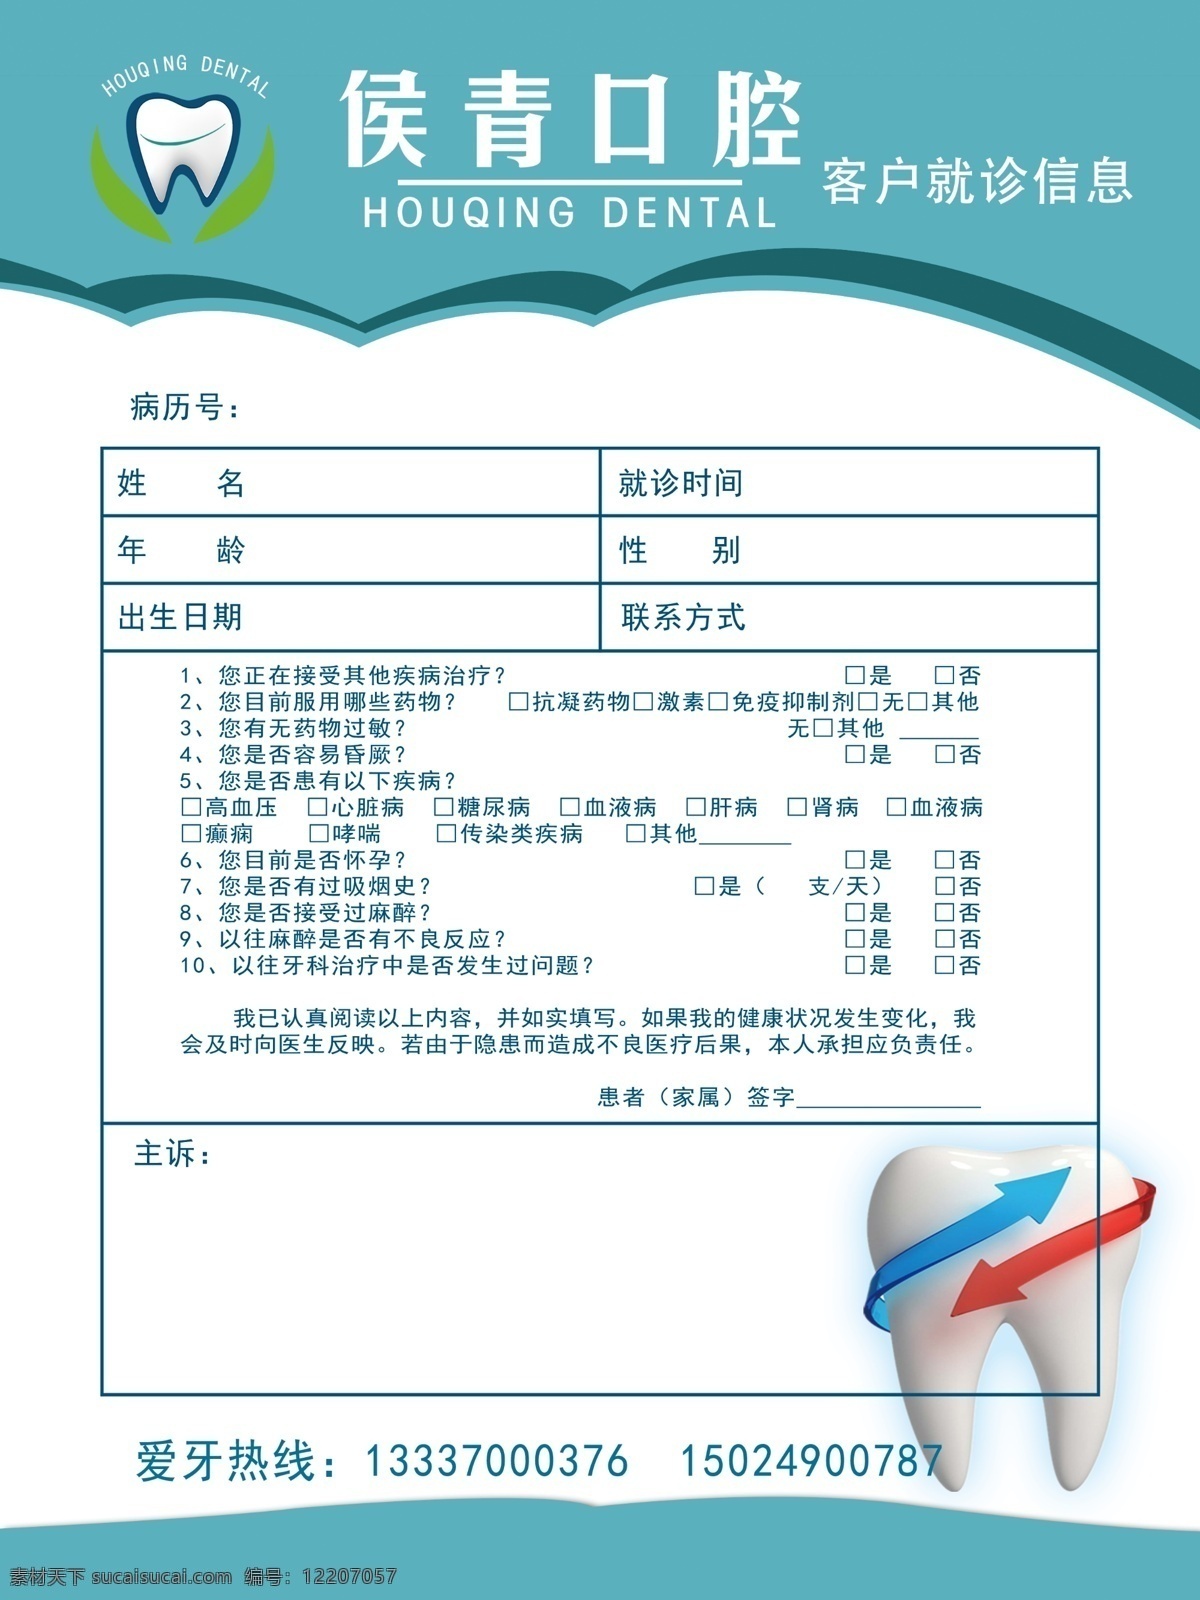 牙科就诊信息 表格 就诊信息 牙齿 口腔 分层 logo